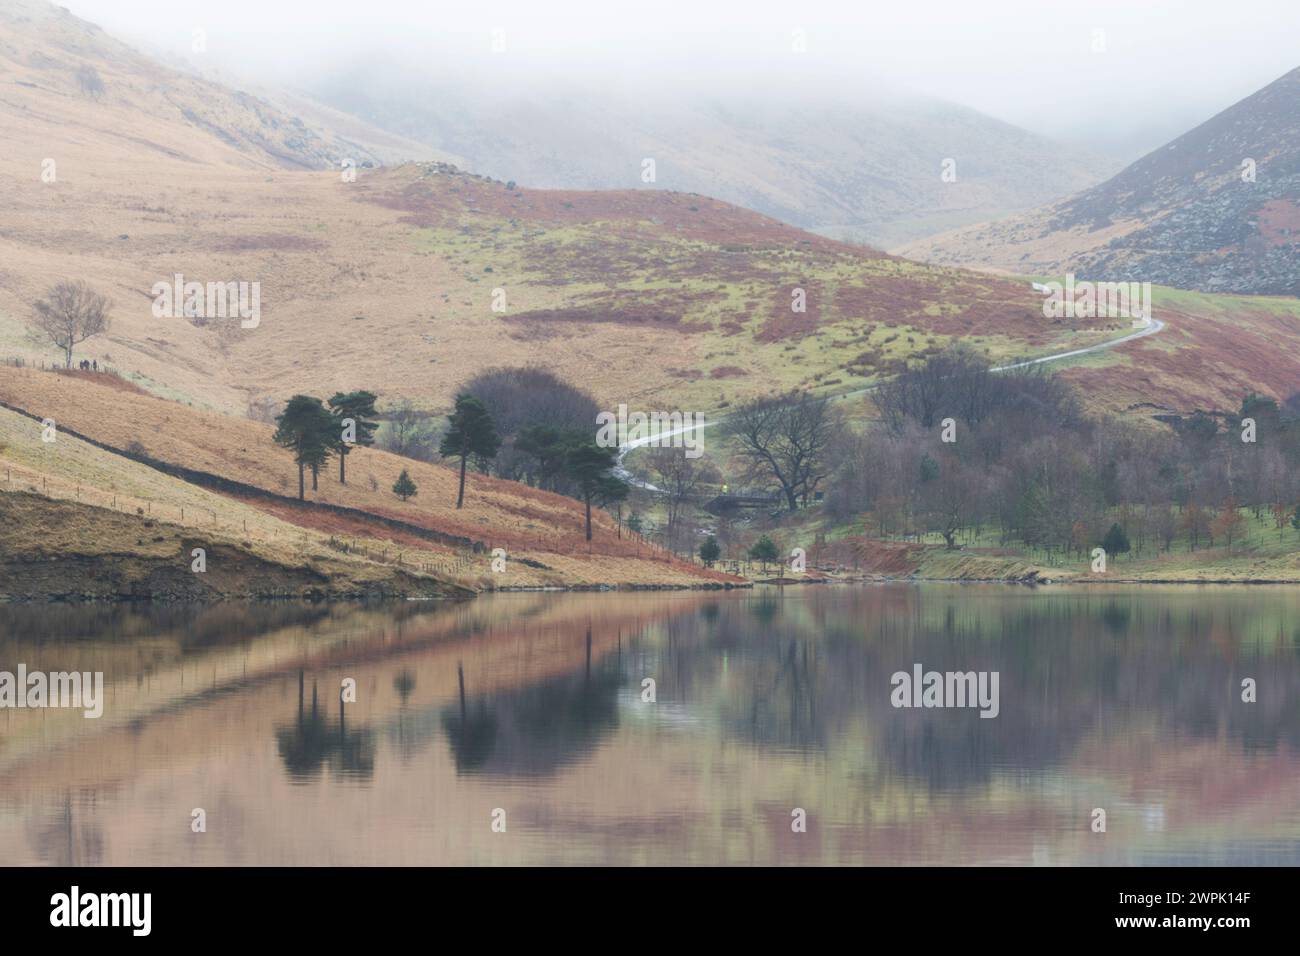 Regno Unito, West Yorkshire, Peak District - bacino idrico della colomba Valley con escursionisti. Foto Stock